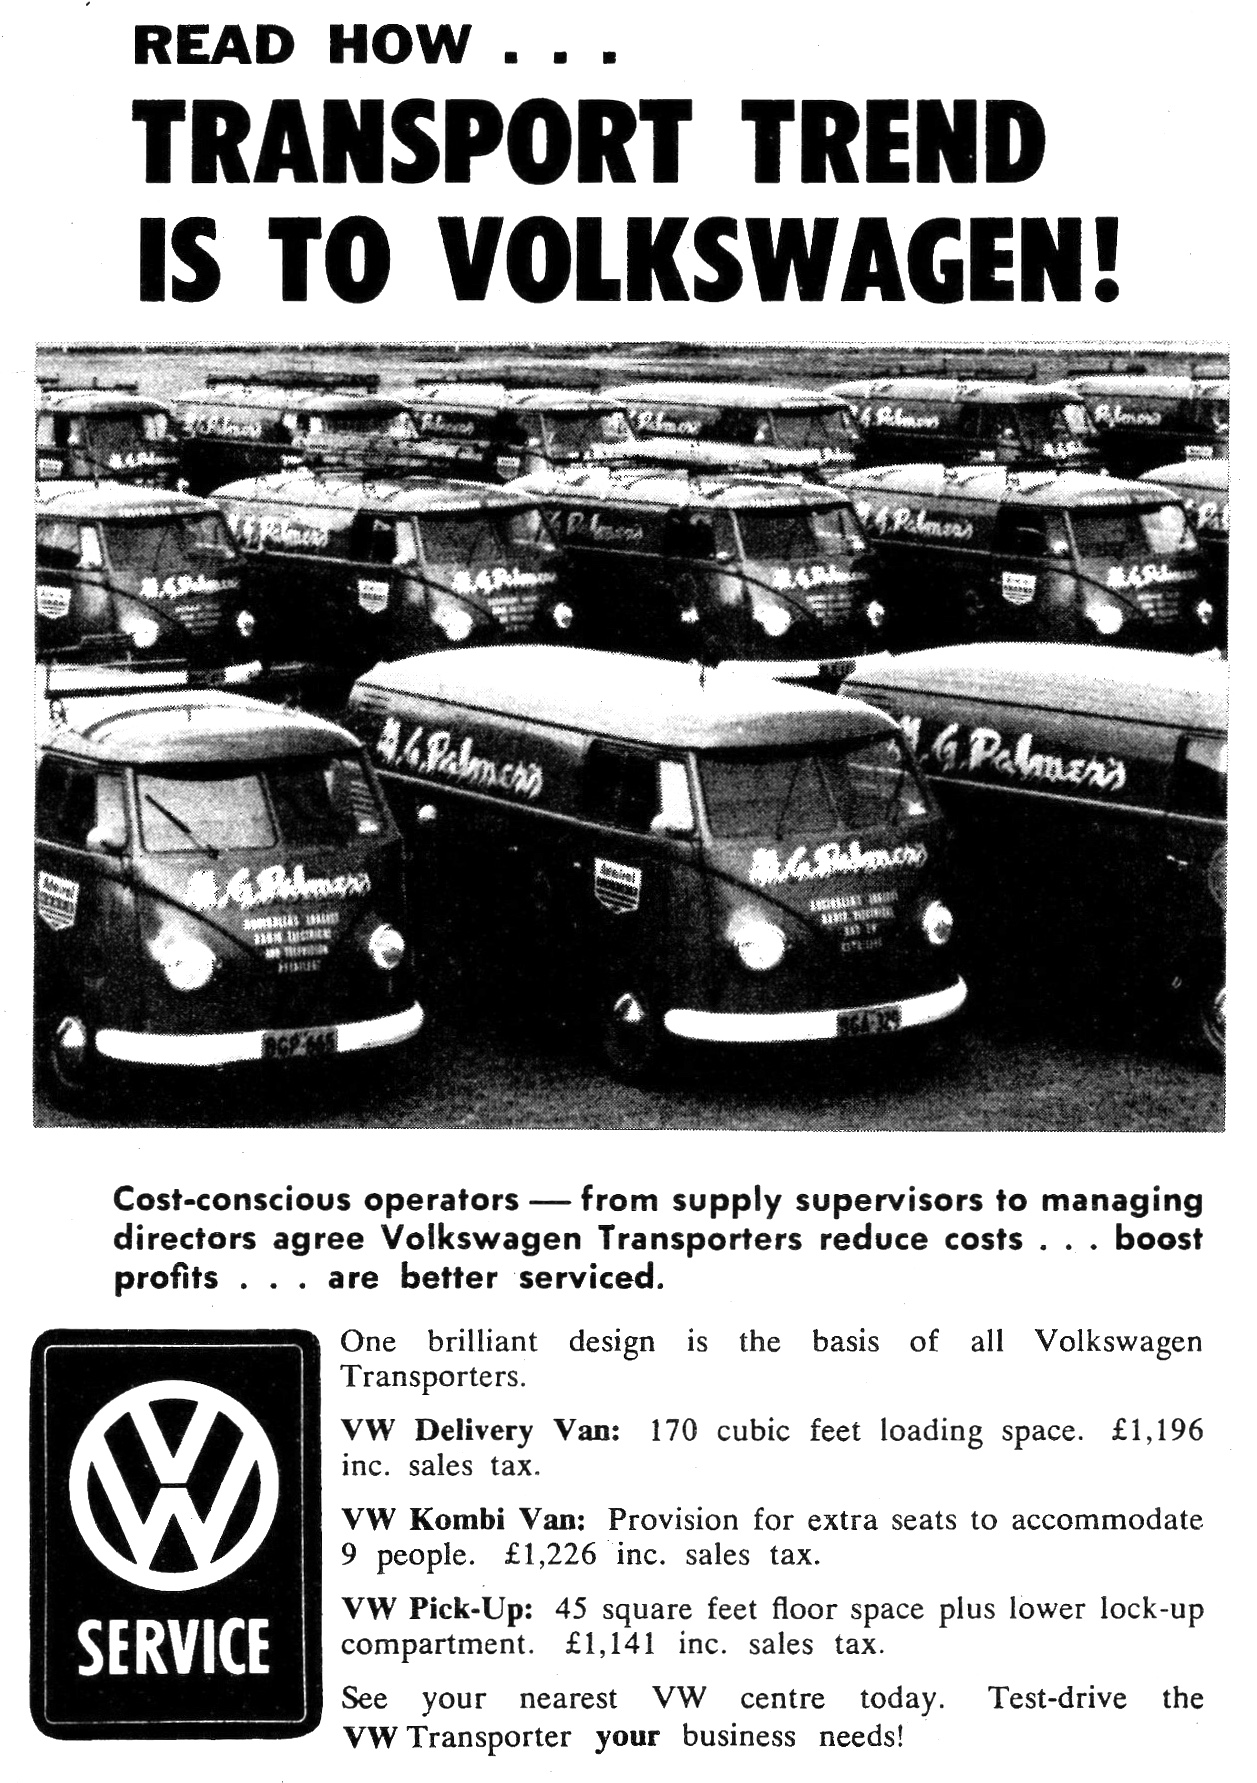 1958 Volkswagen Transport Trend Is To Volkswagen Page 1